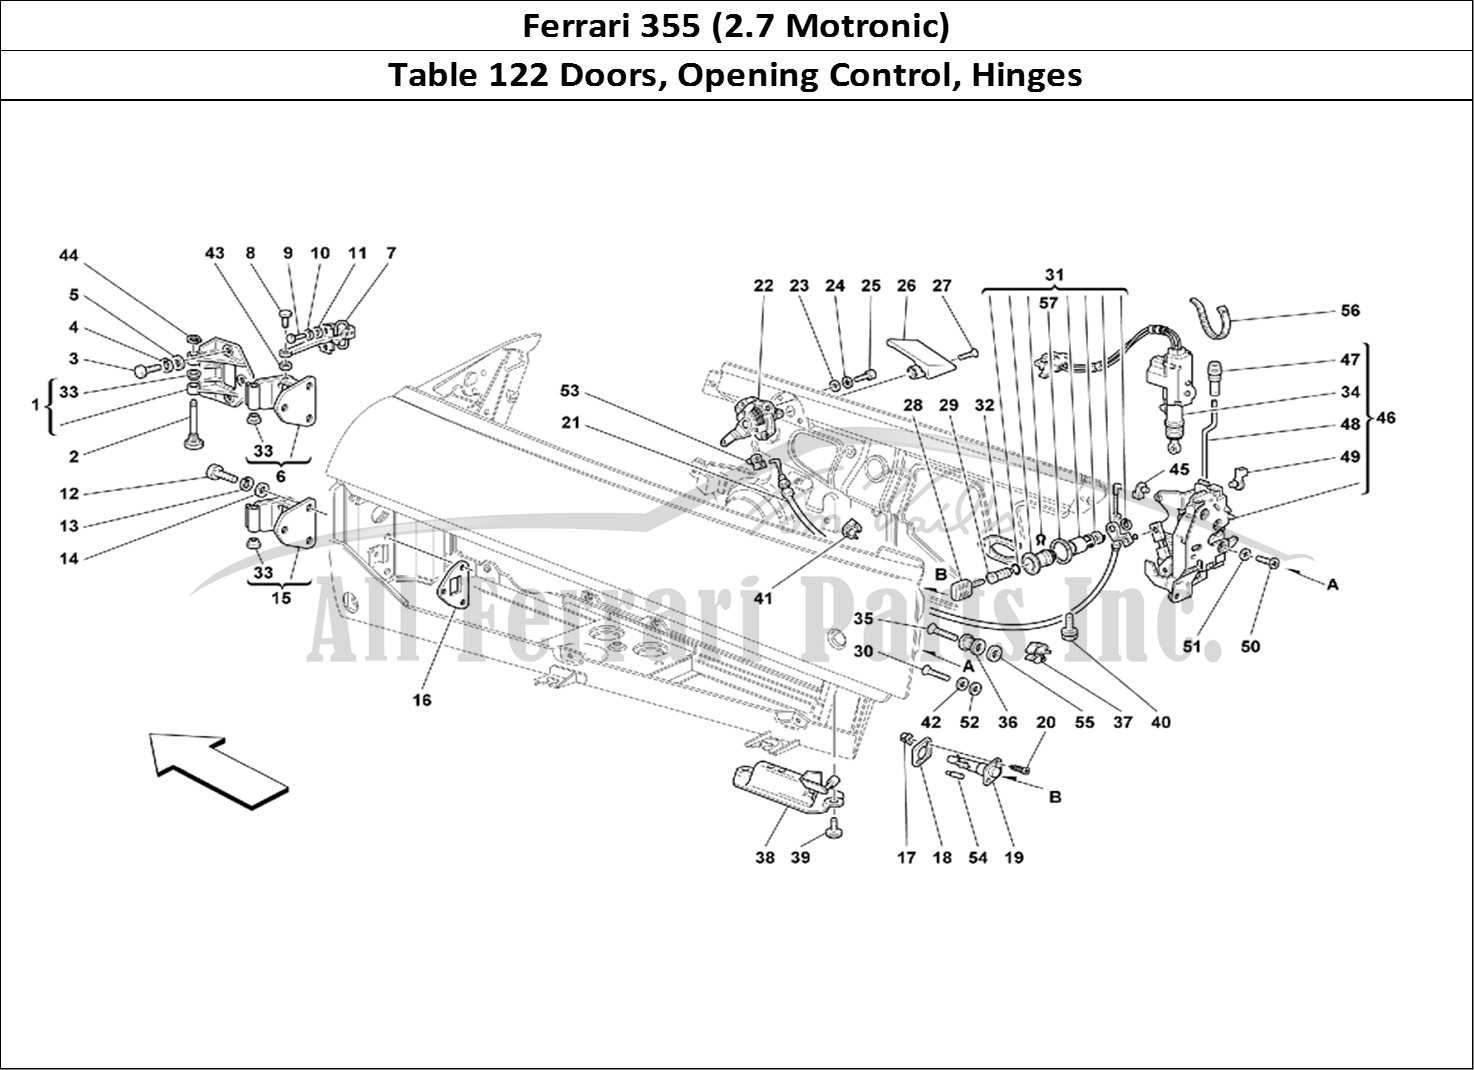 Ferrari Parts Ferrari 355 (2.7 Motronic) Page 122 Doors - Opening Control a